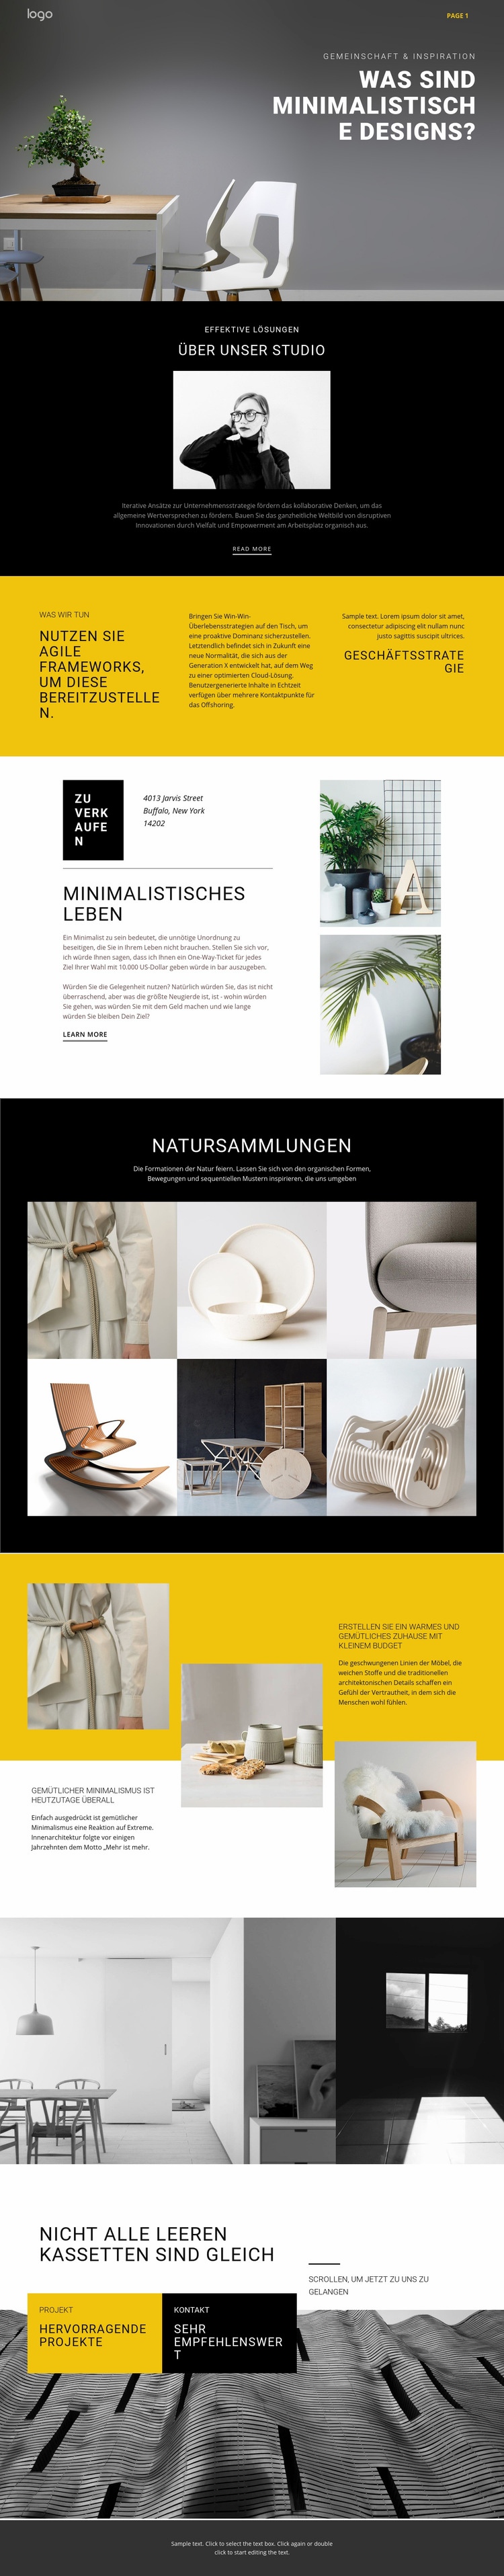 Minimalistisches Designer-Interieur Website-Modell